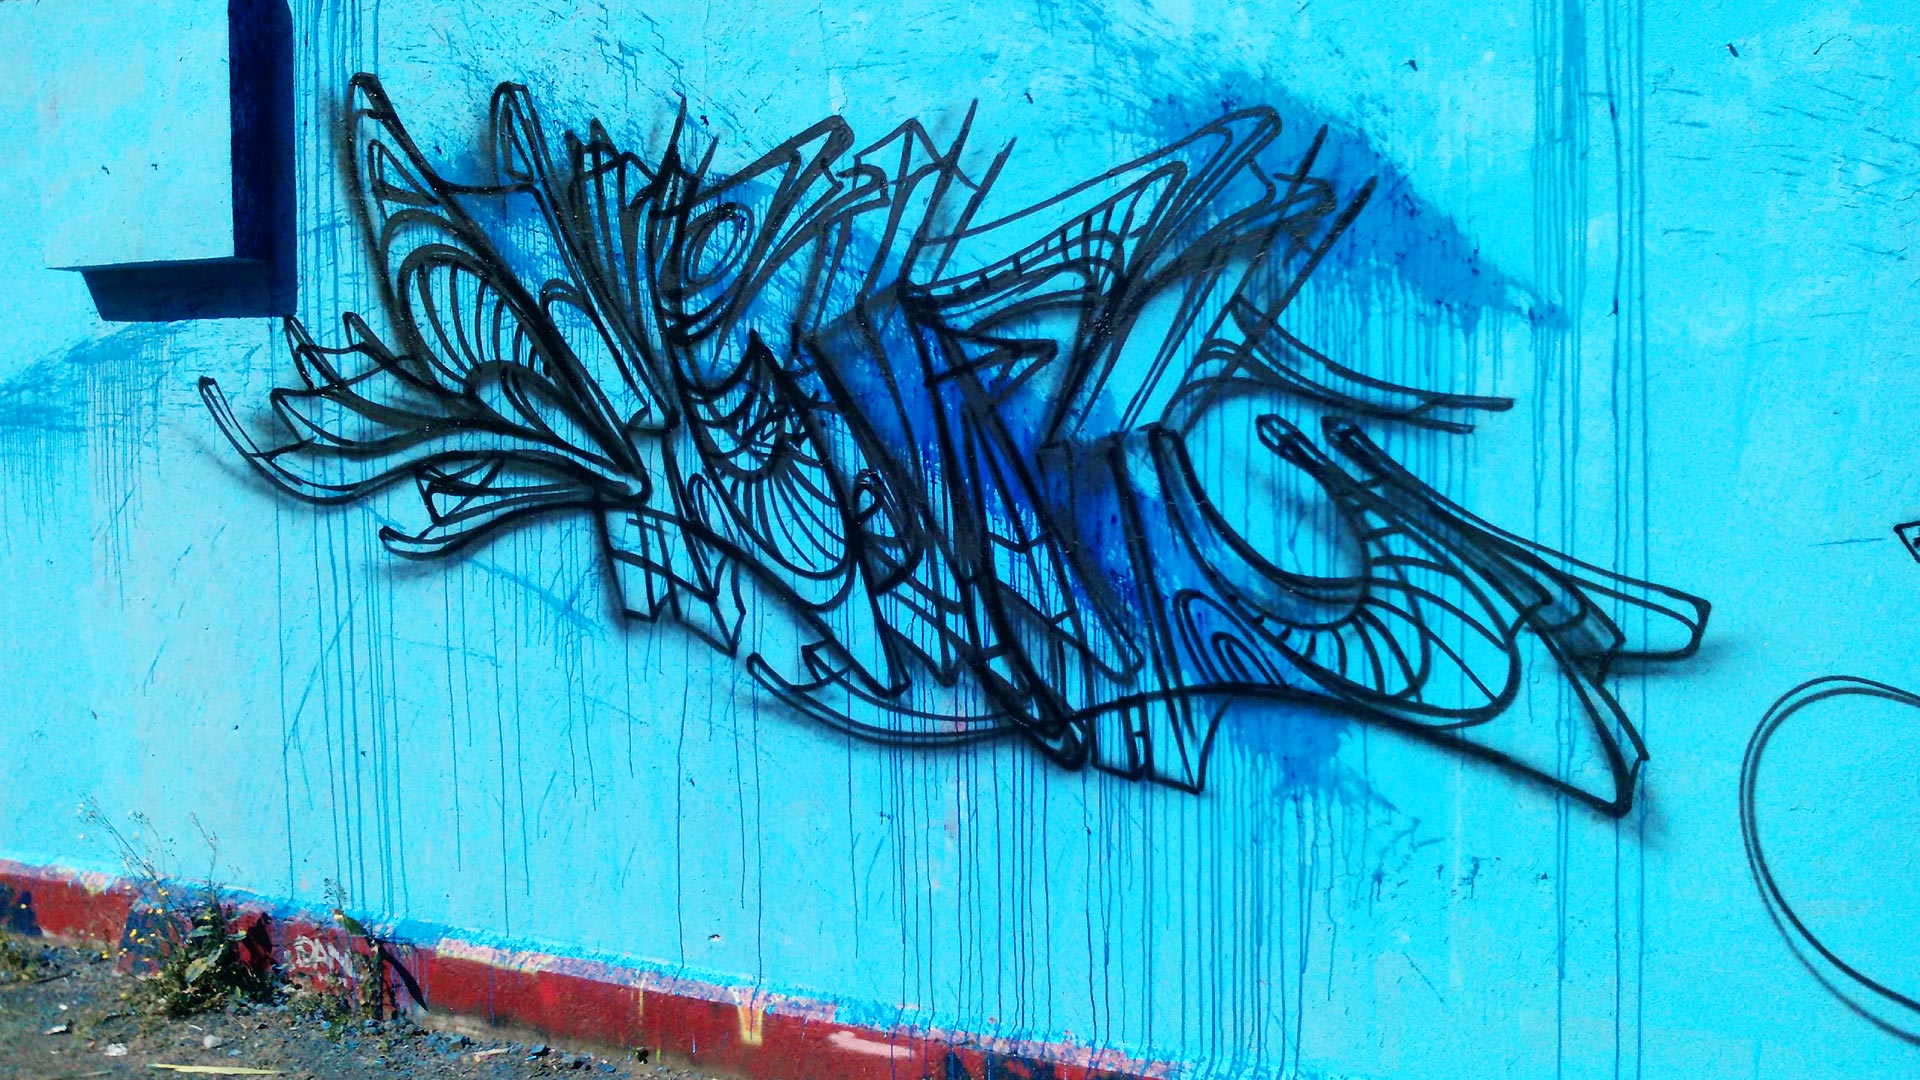 deft_esquisse_graffiti_2010